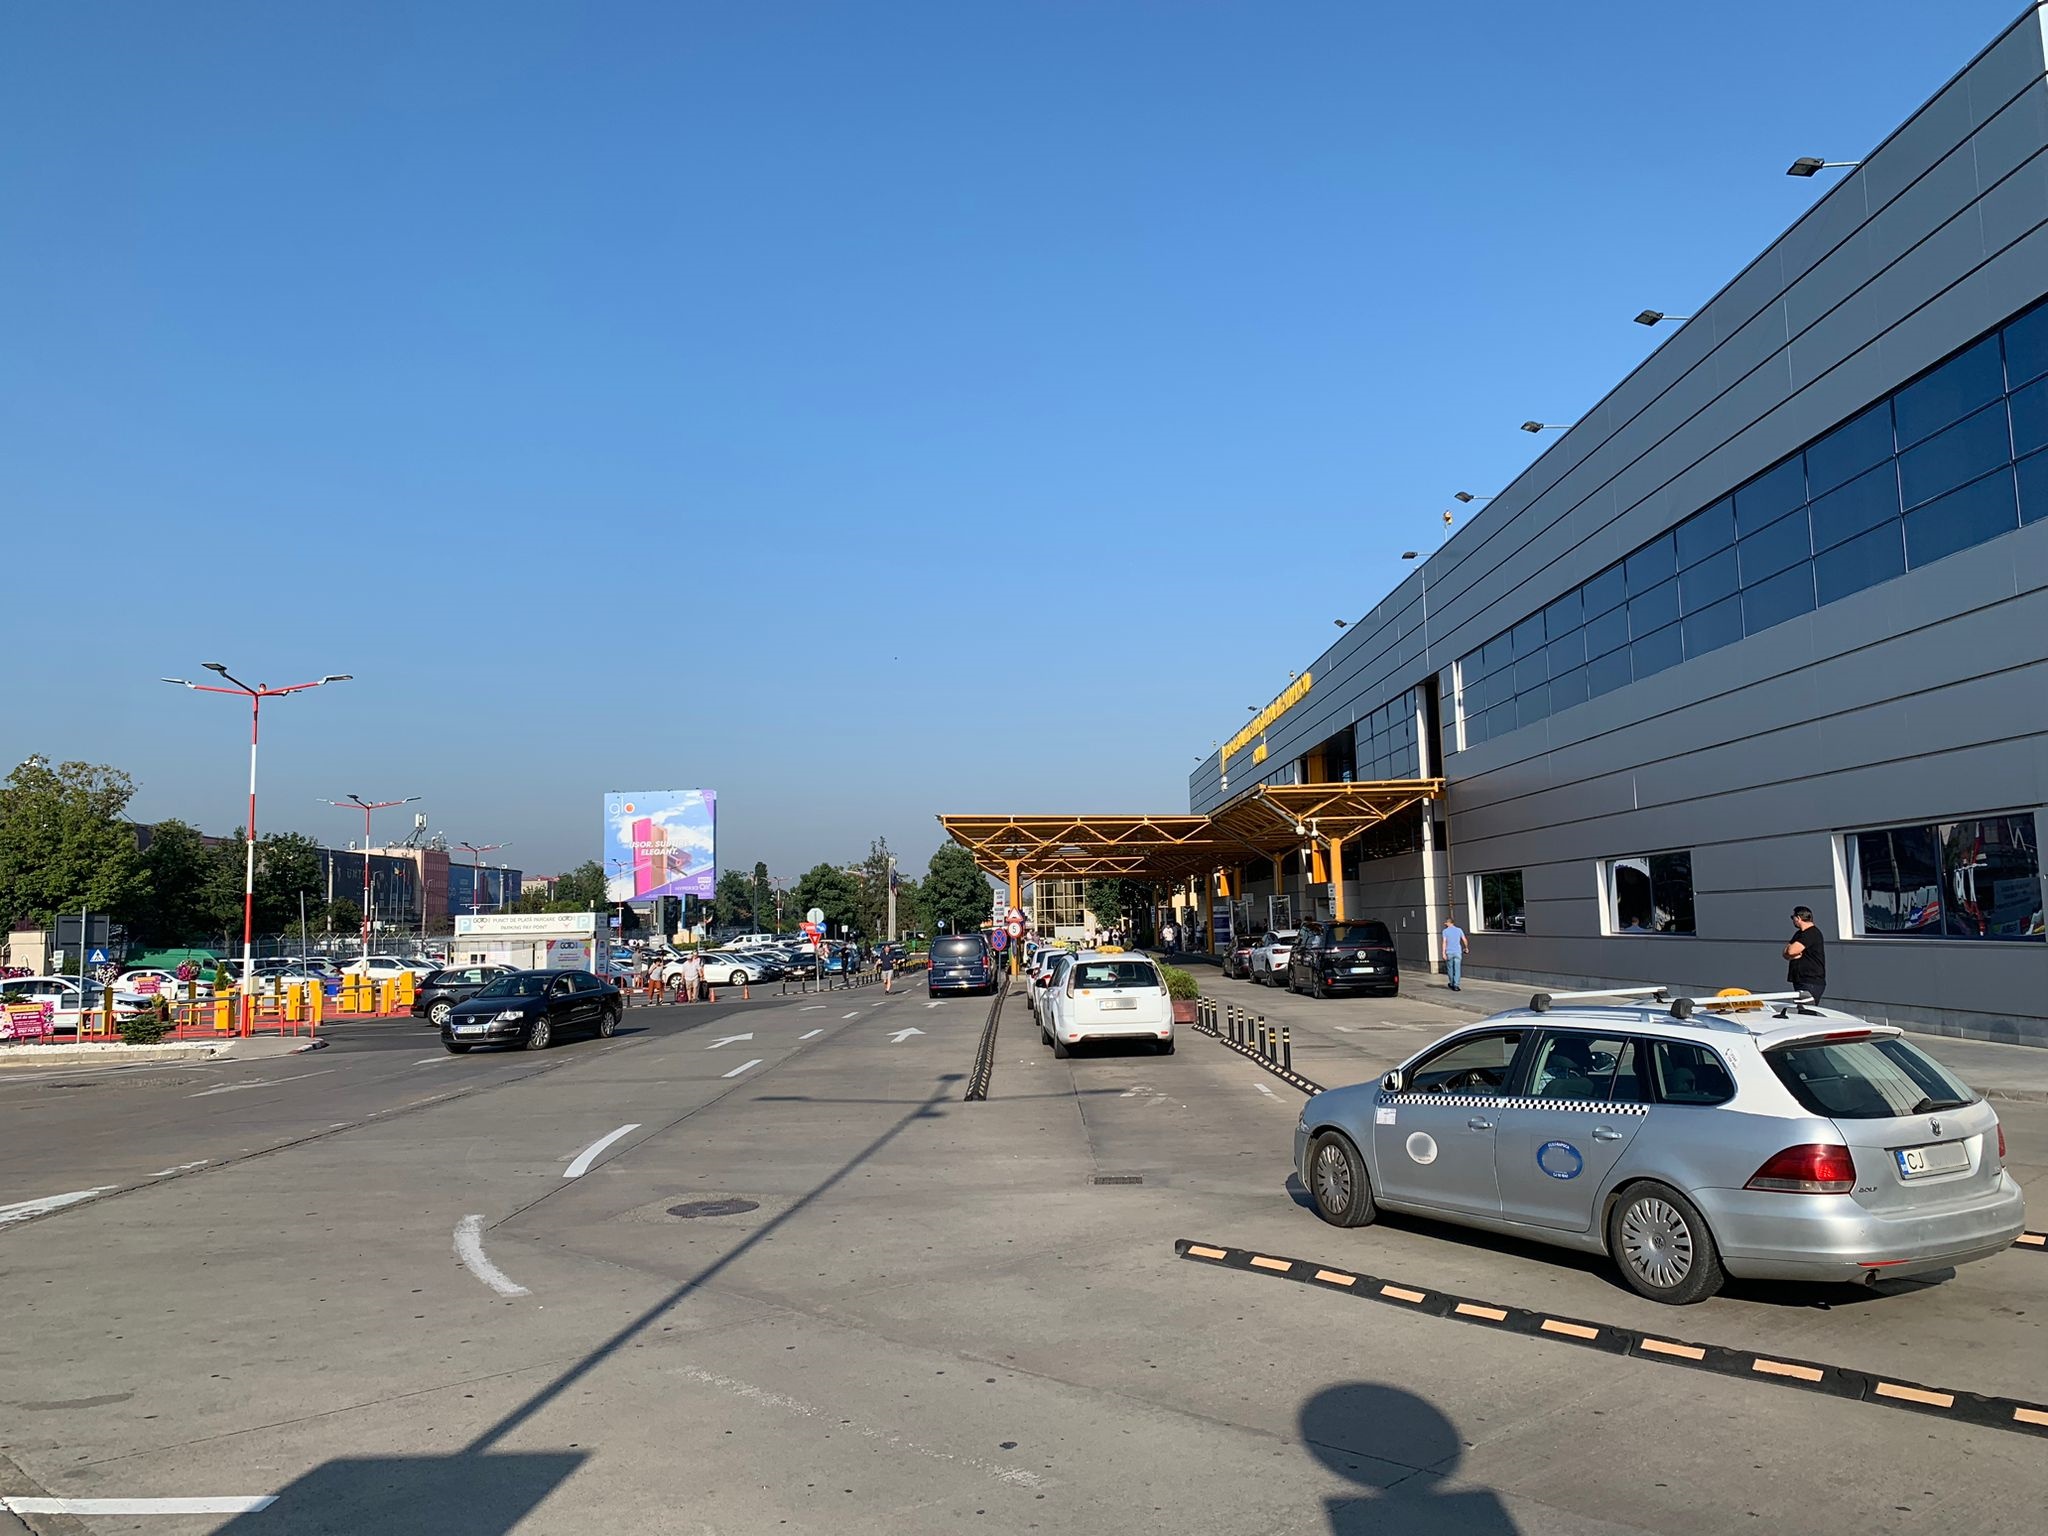 ”Fac ”ciupeli”, ”mizerii”. Este trist că ne mai vizitează și străini” - Taxă aberantă cerută de un taximetrist din Aeroportul Cluj